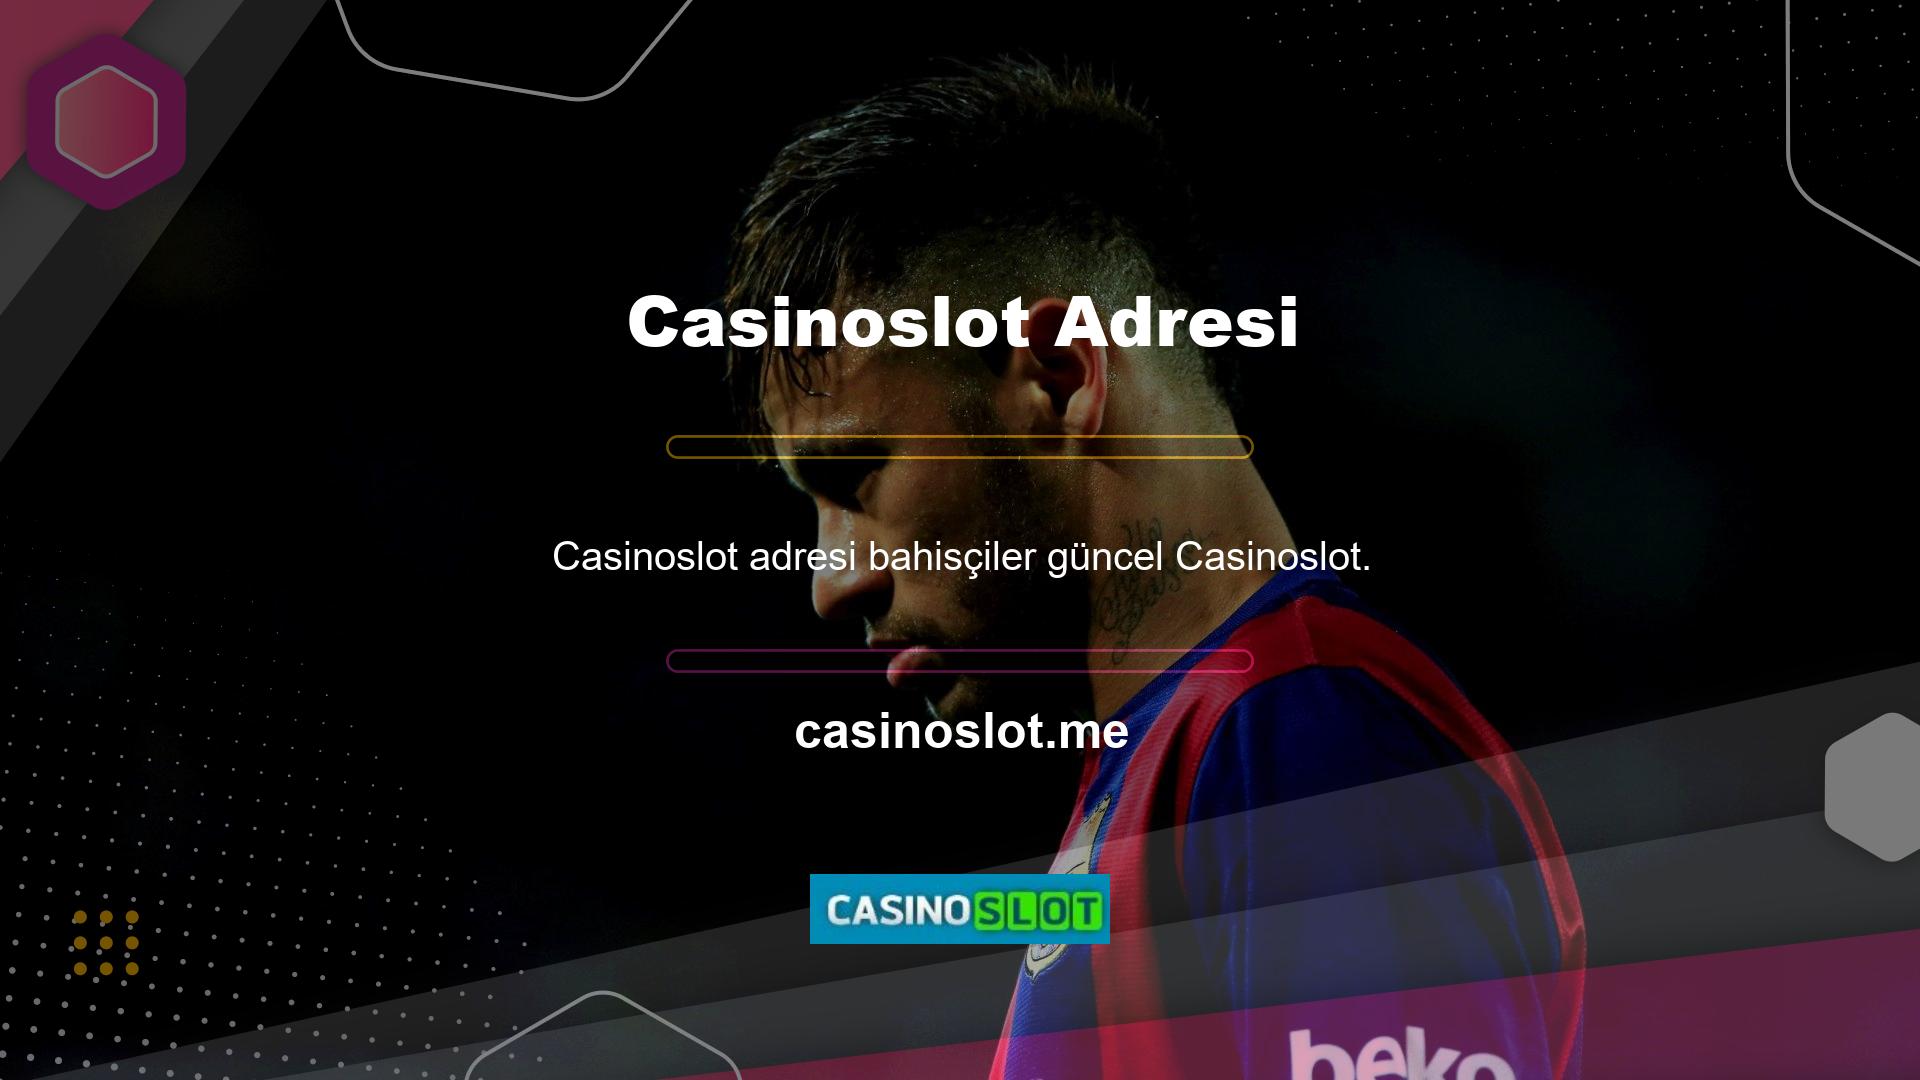 com adresini kullanarak Casinoslot bahis sitesine kolay erişim sağlayacak şekilde kurulmuş bir sistem aracılığıyla Casinoslot bahis sitesine erişebilirler